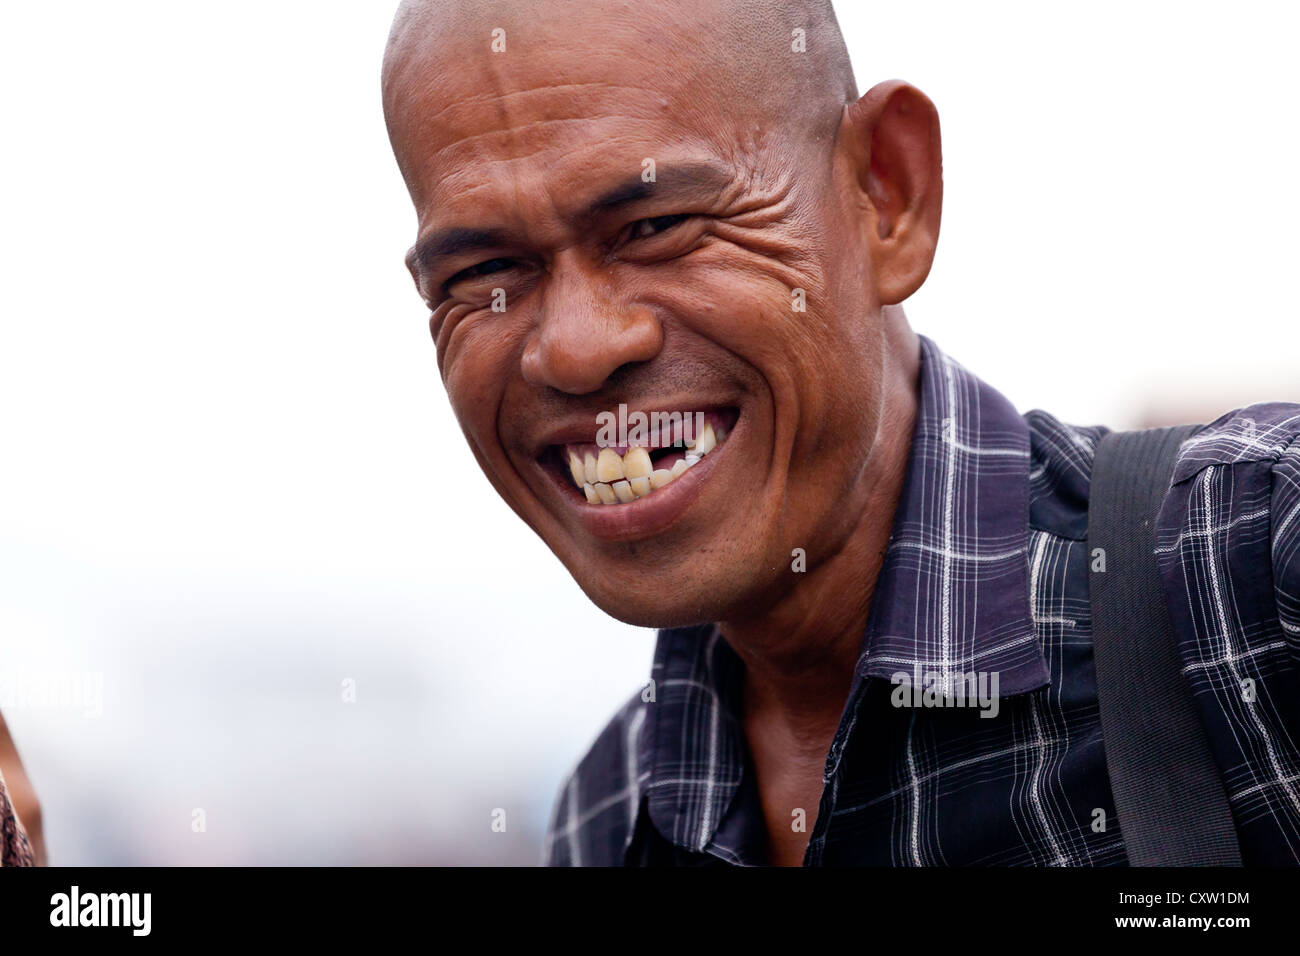 Indonesian Man in Banjarmasin, Indonesia Stock Photo